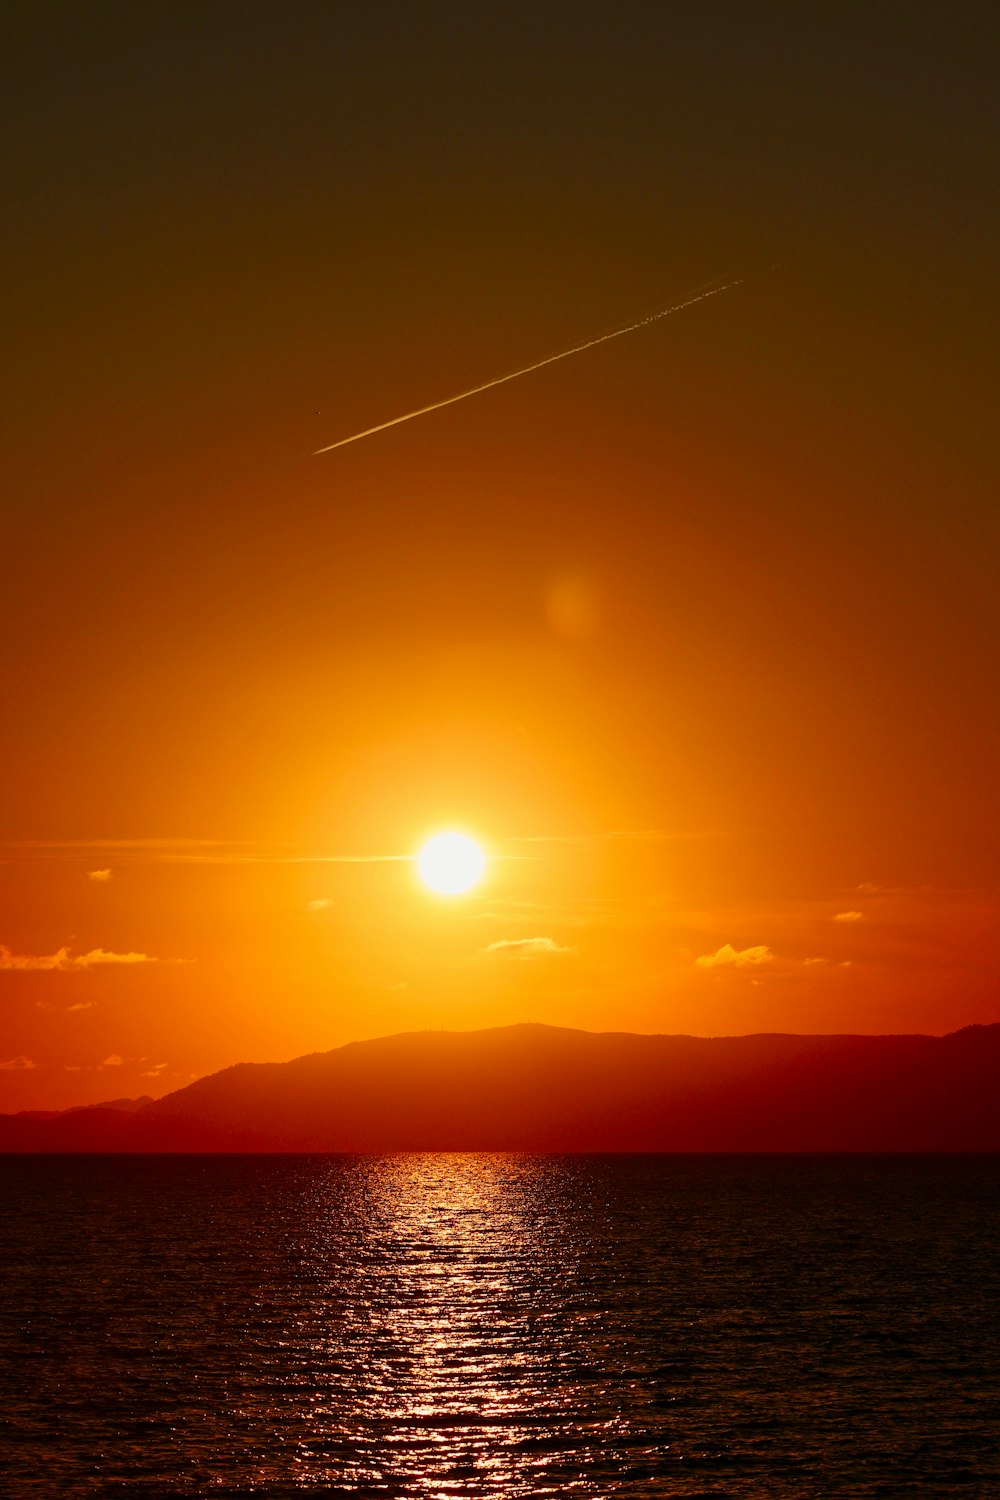 El sol se está poniendo sobre el océano con un avión en el cielo